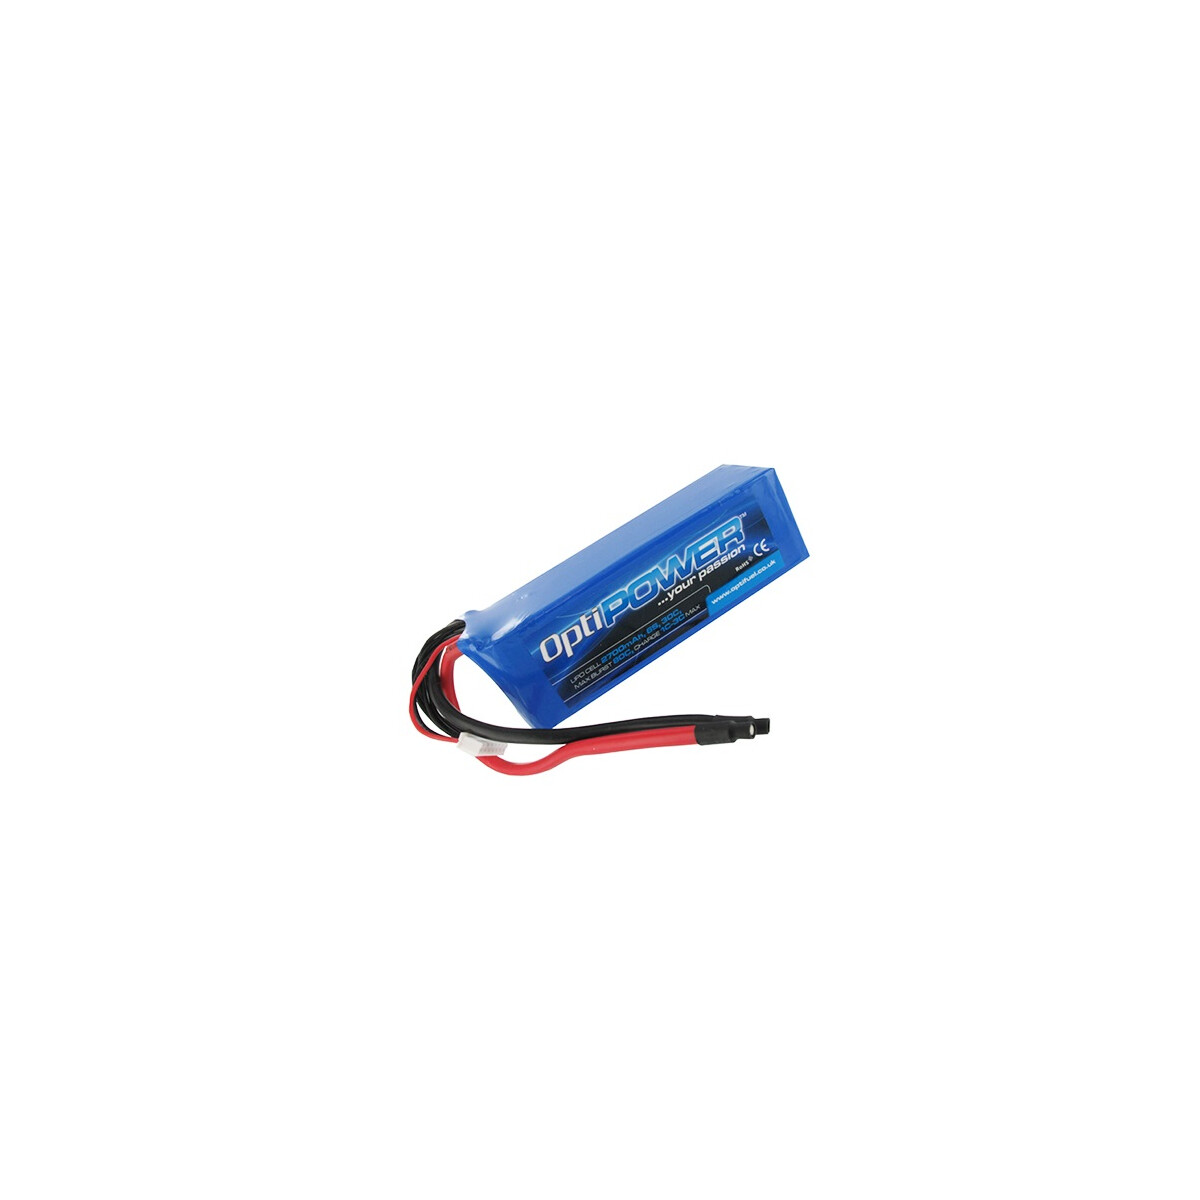 Opti Power Lipo Cell Battery 2700mAh 6S 30C